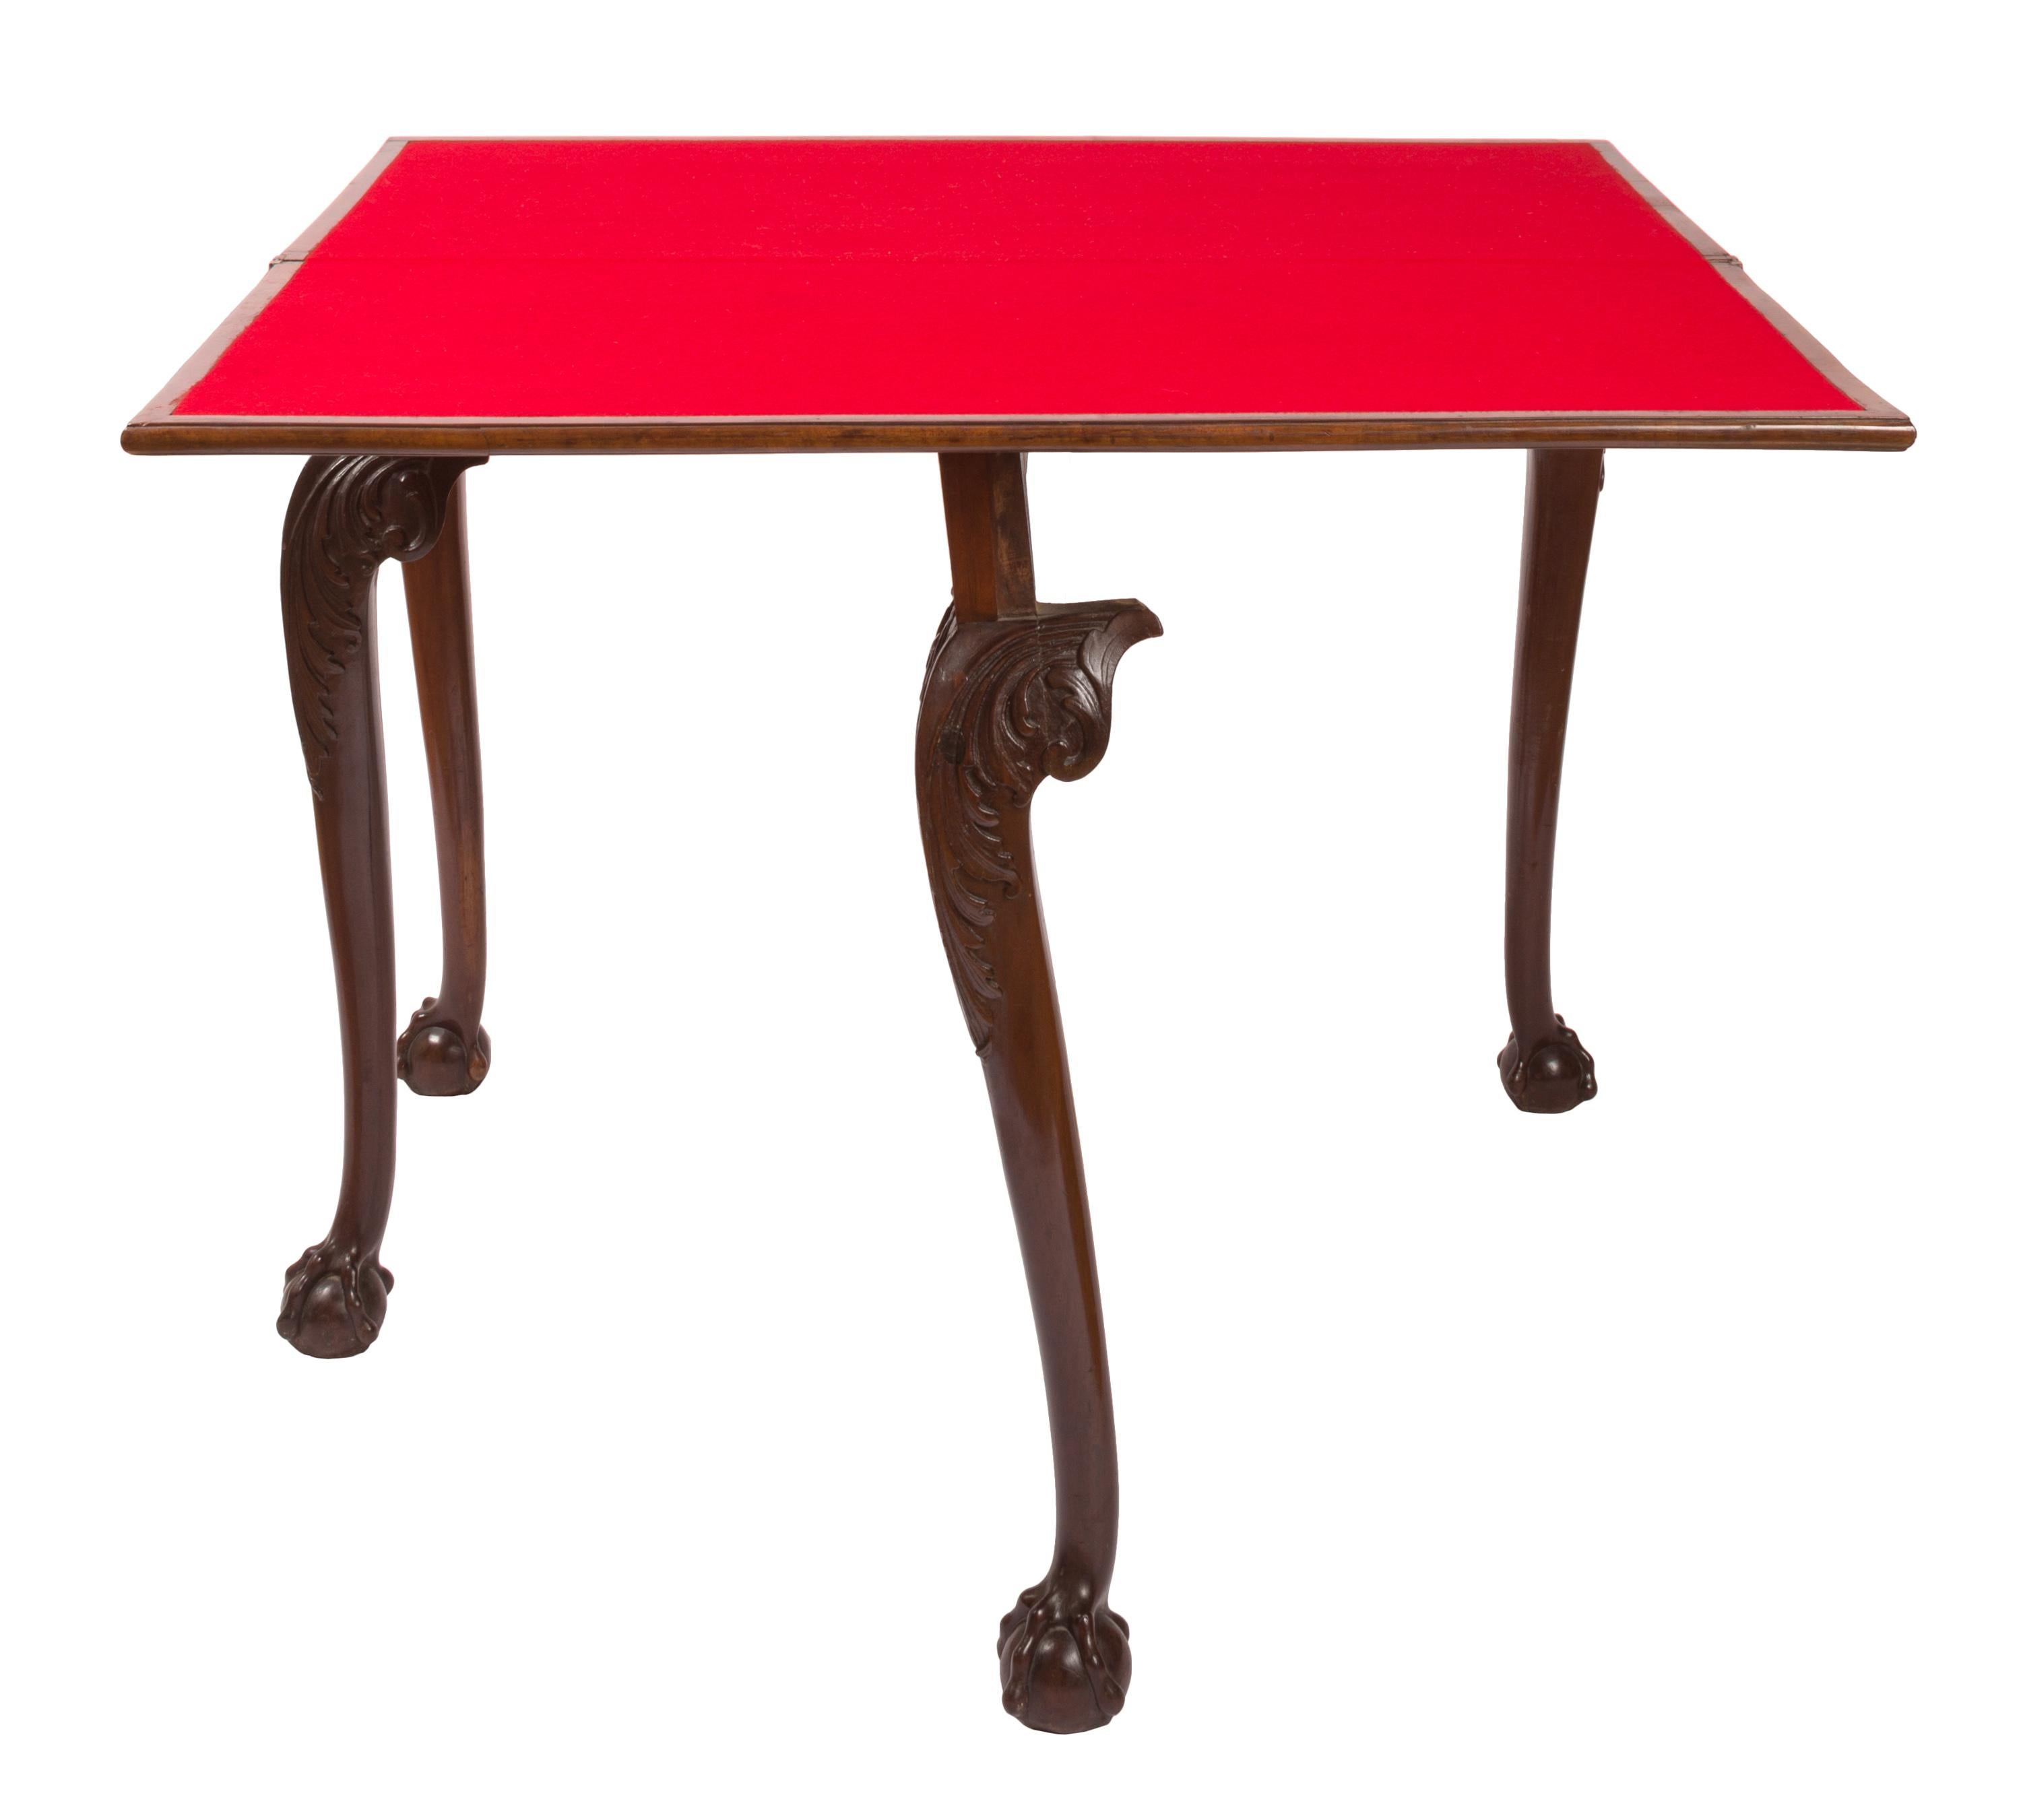 Ein dreh- und klappbarer Kartentisch im Chippendale-Stil des 19. Jahrhunderts, der sich geschickt von einem schmalen Beistelltisch in eine quadratische, mit rotem Filz bezogene Spielfläche verwandelt. Die schlanken und eleganten Cabriole-Beine sind